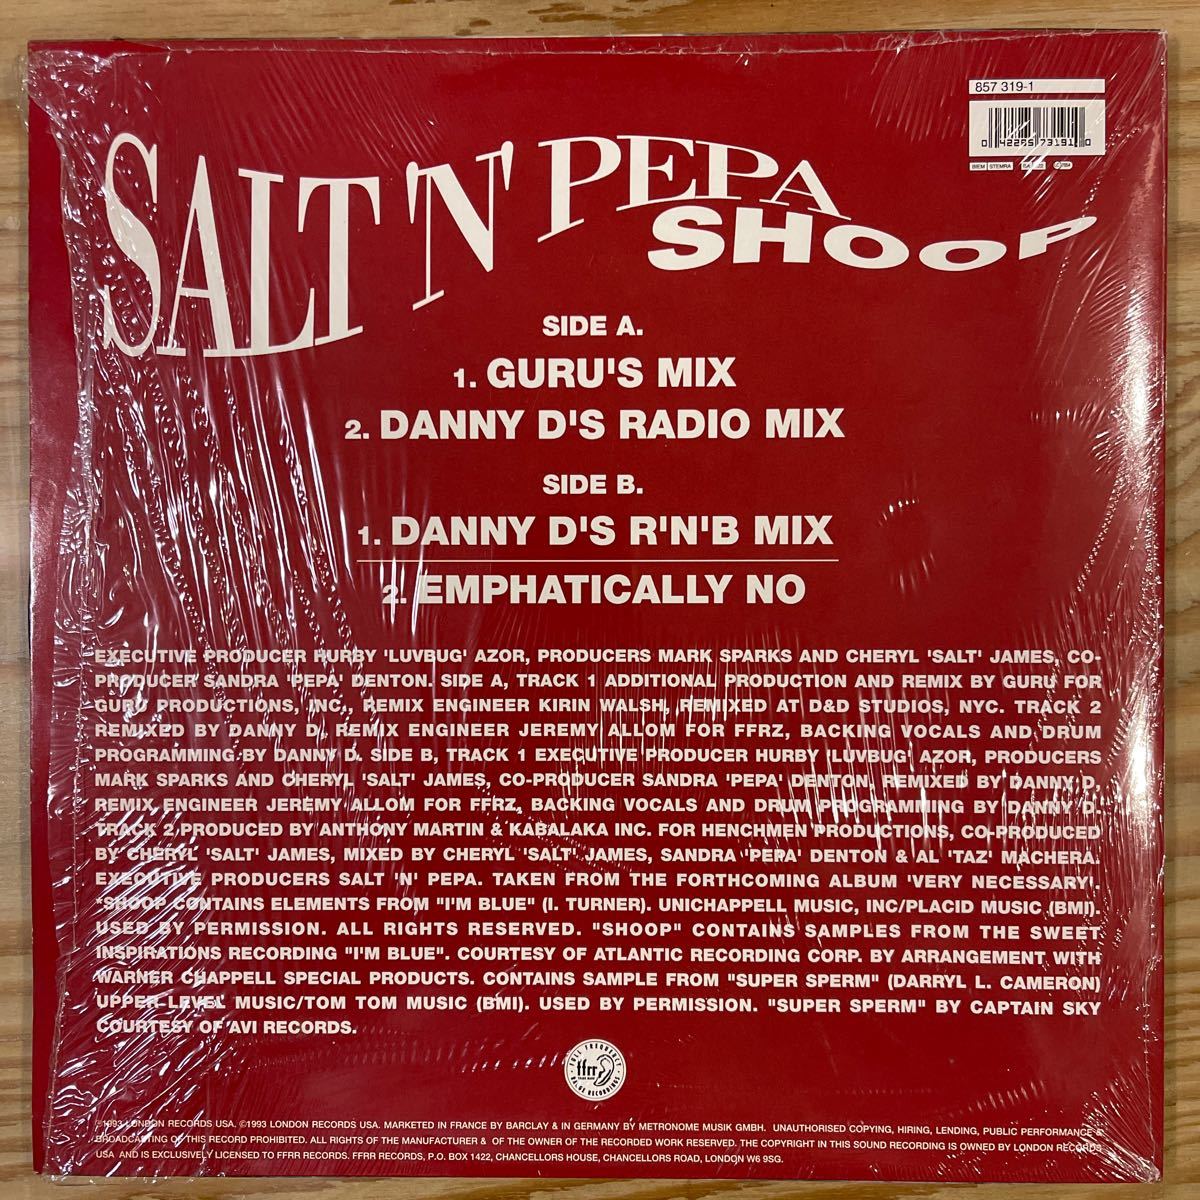 Salt'n'pepa/Shoop/レコード/中古/DJ/CLUB/HIPHOP_画像2